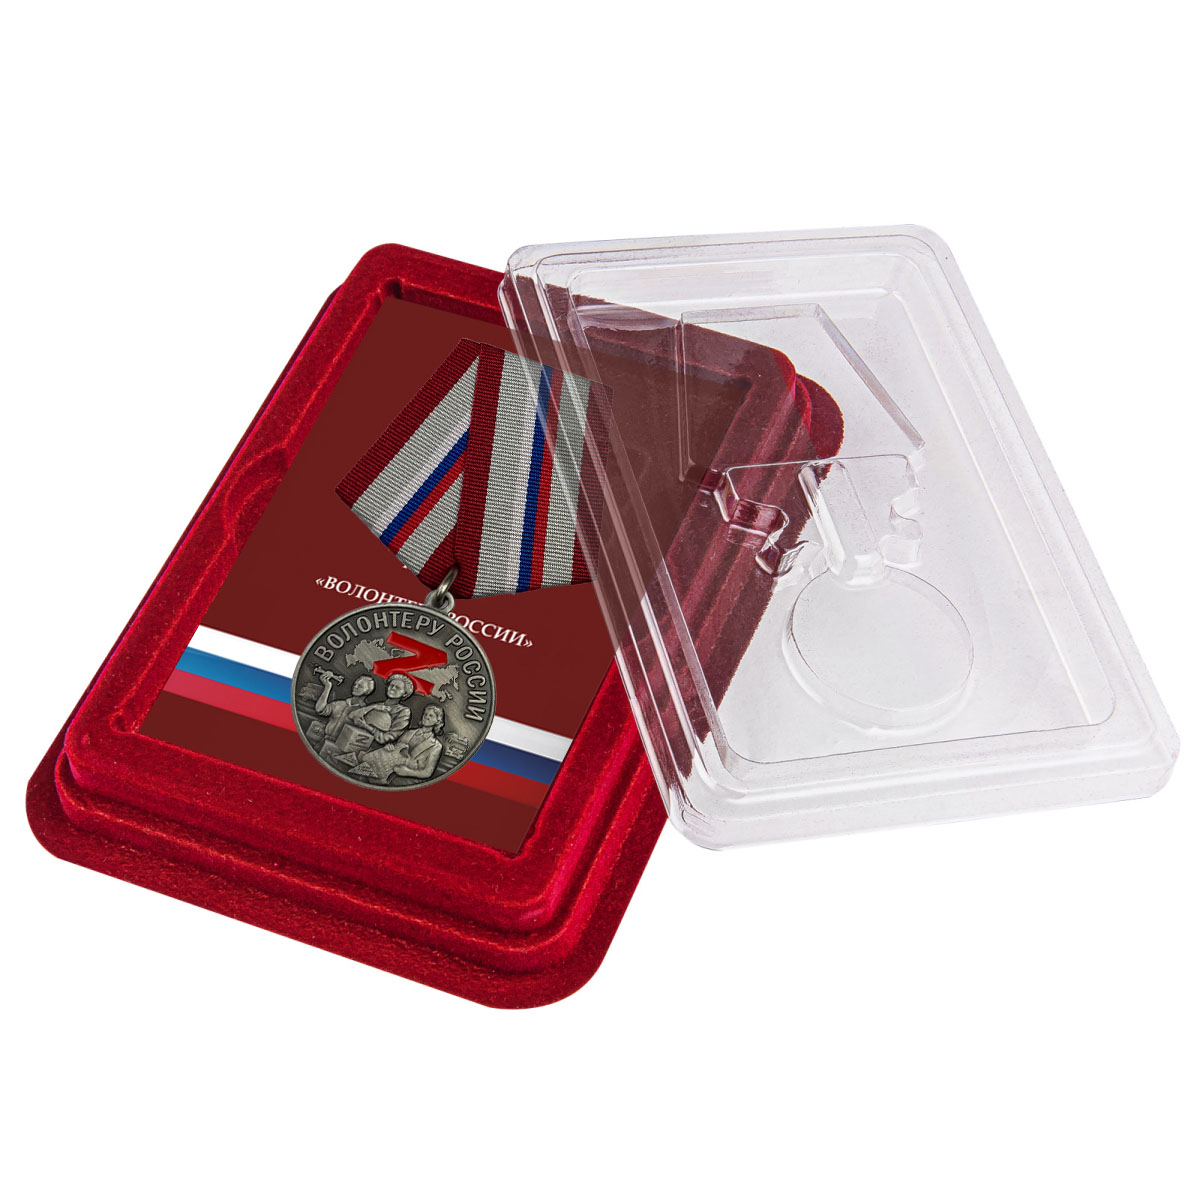 Медаль "Волонтеру России" в нарядном футляре